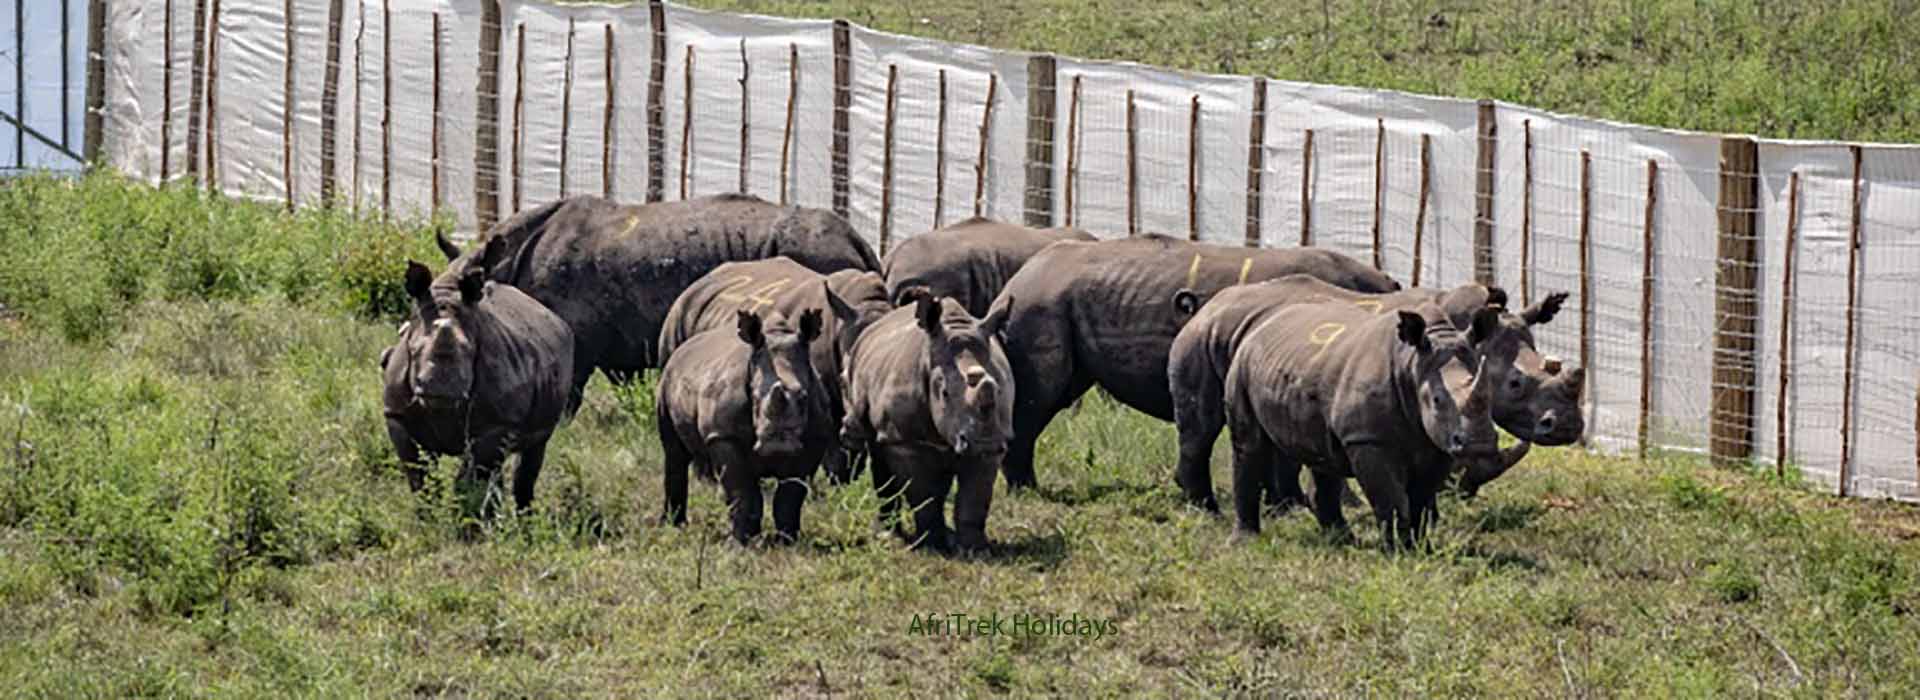 South Africa Transfers 30 White Rhinos To Rwanda